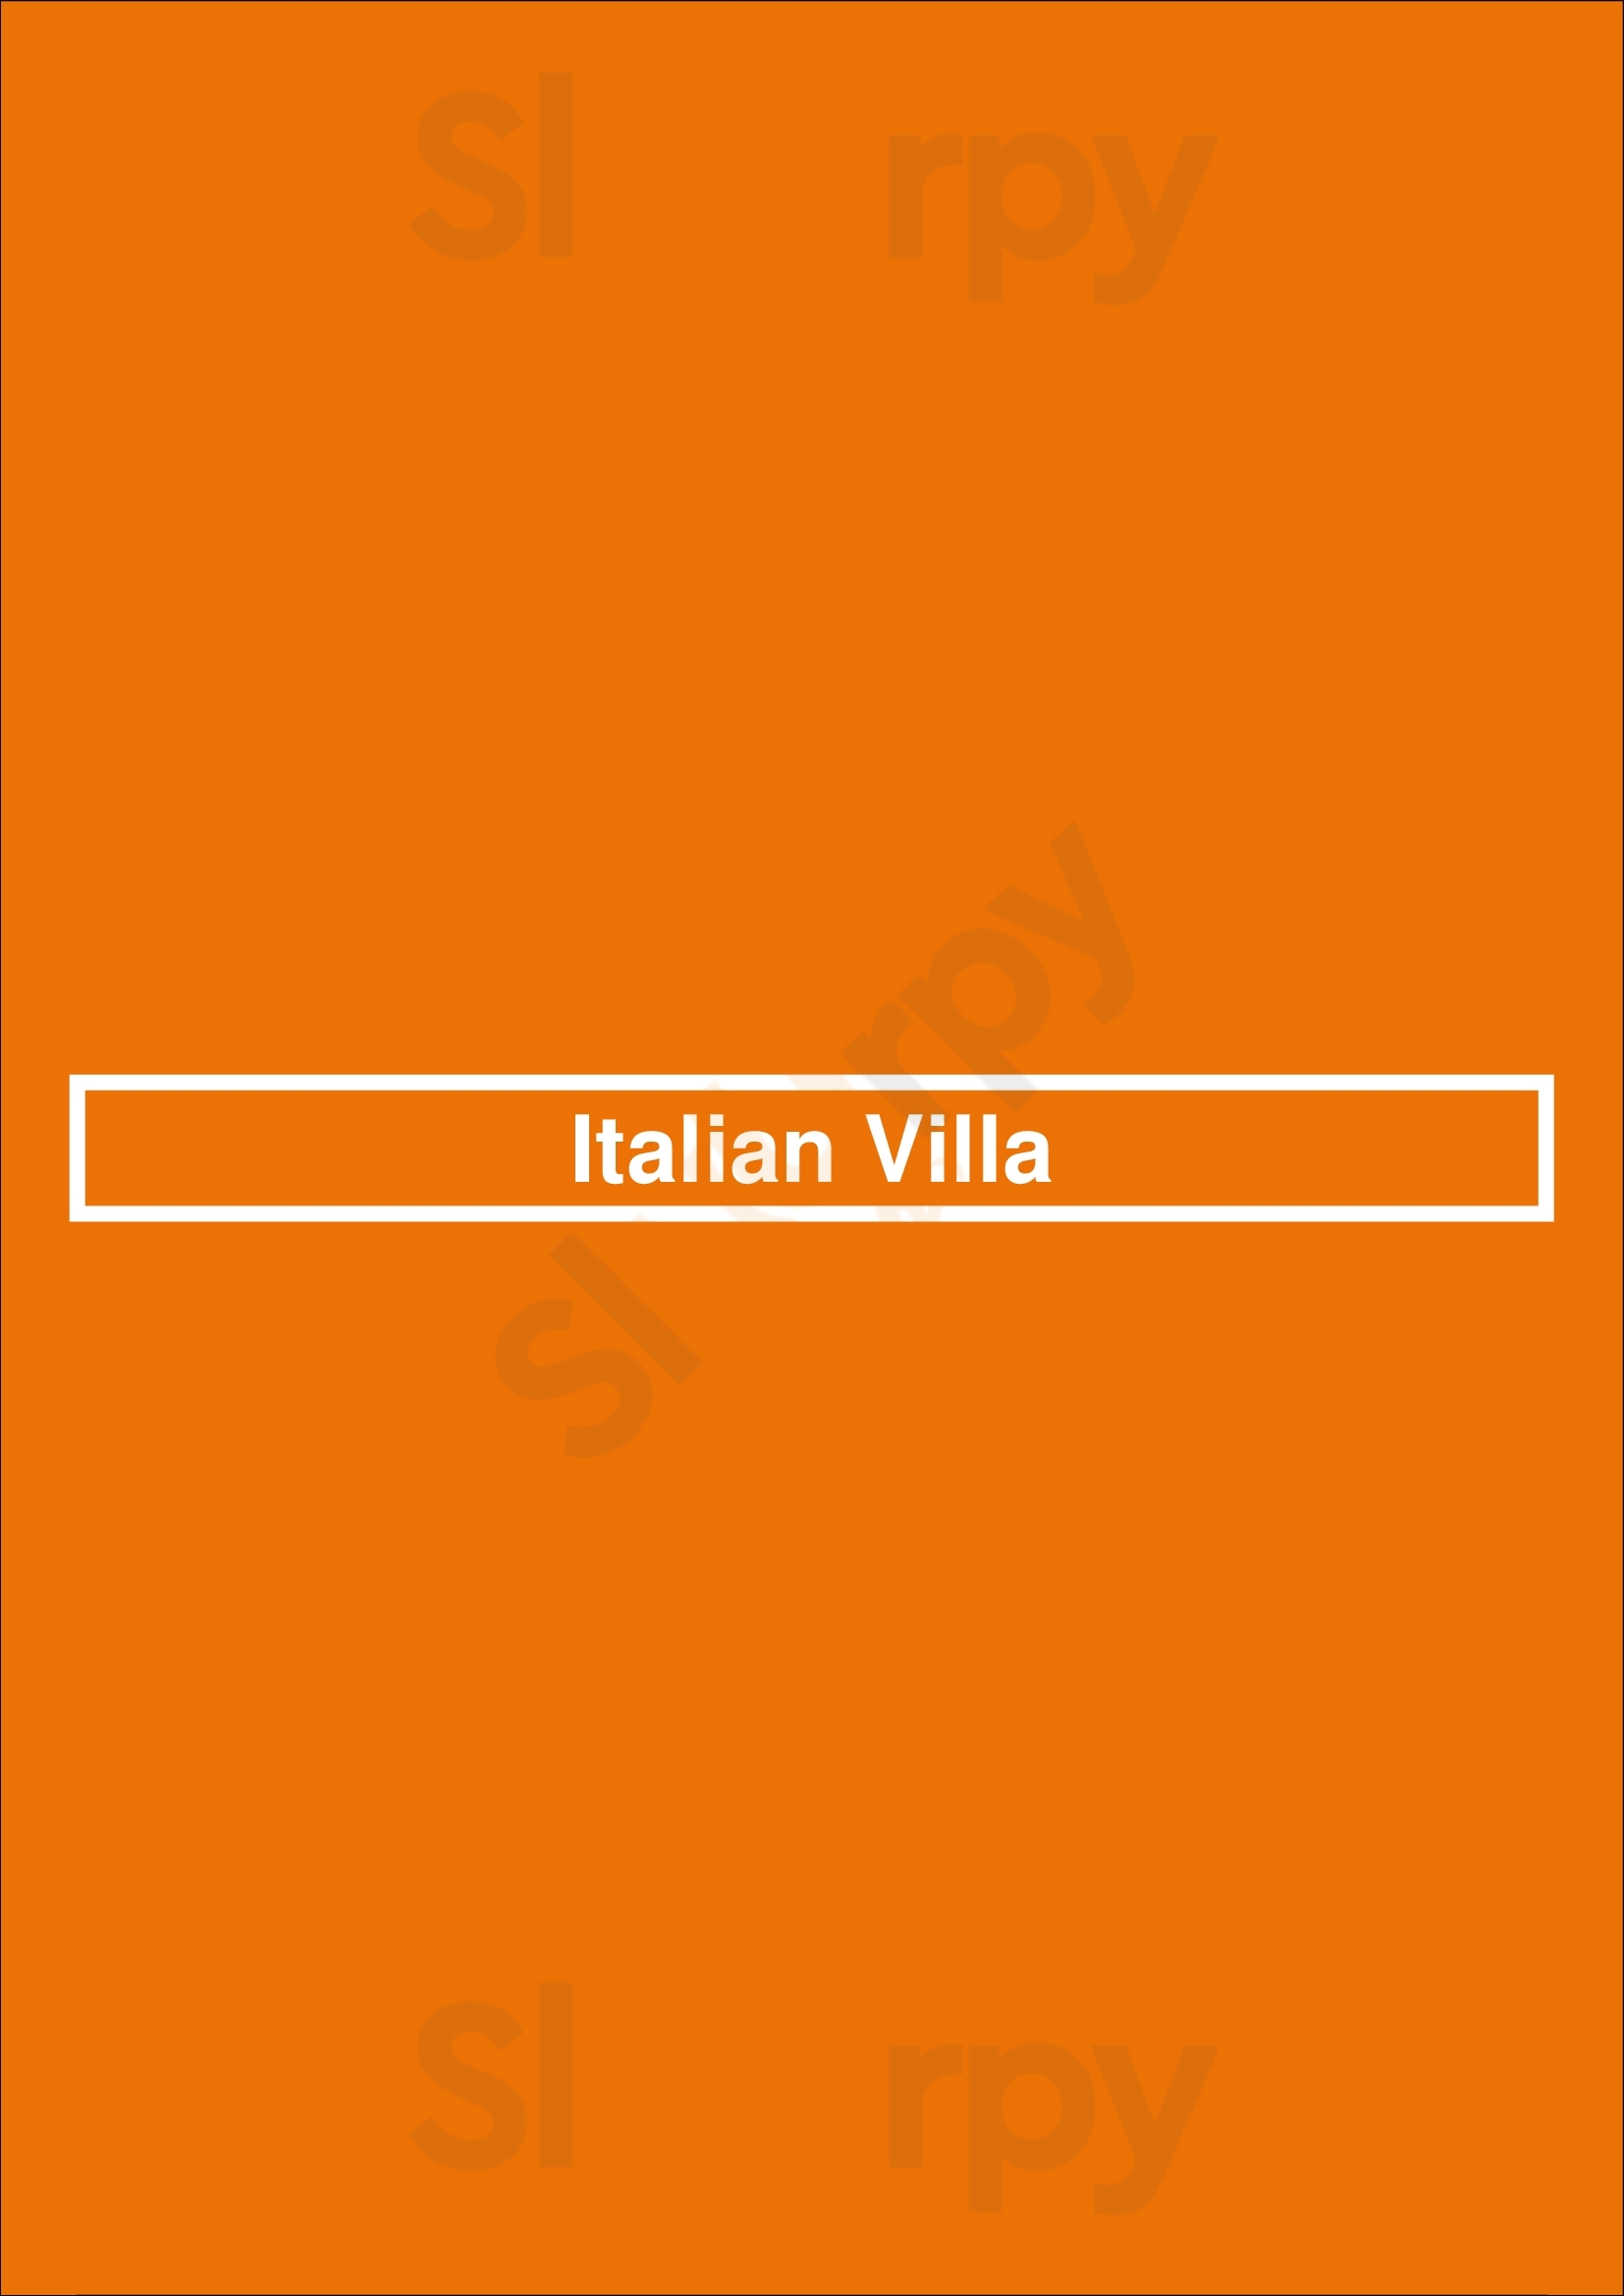 Italian Villa Carrollton Menu - 1